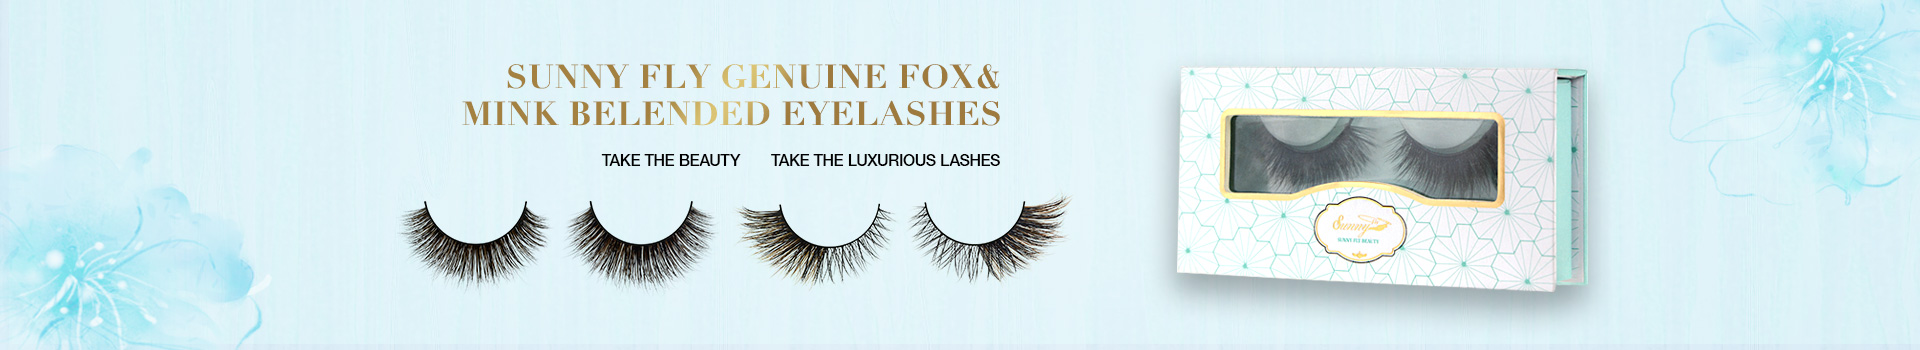 Fox & Mink Fur Blended Eyelashes FMB06